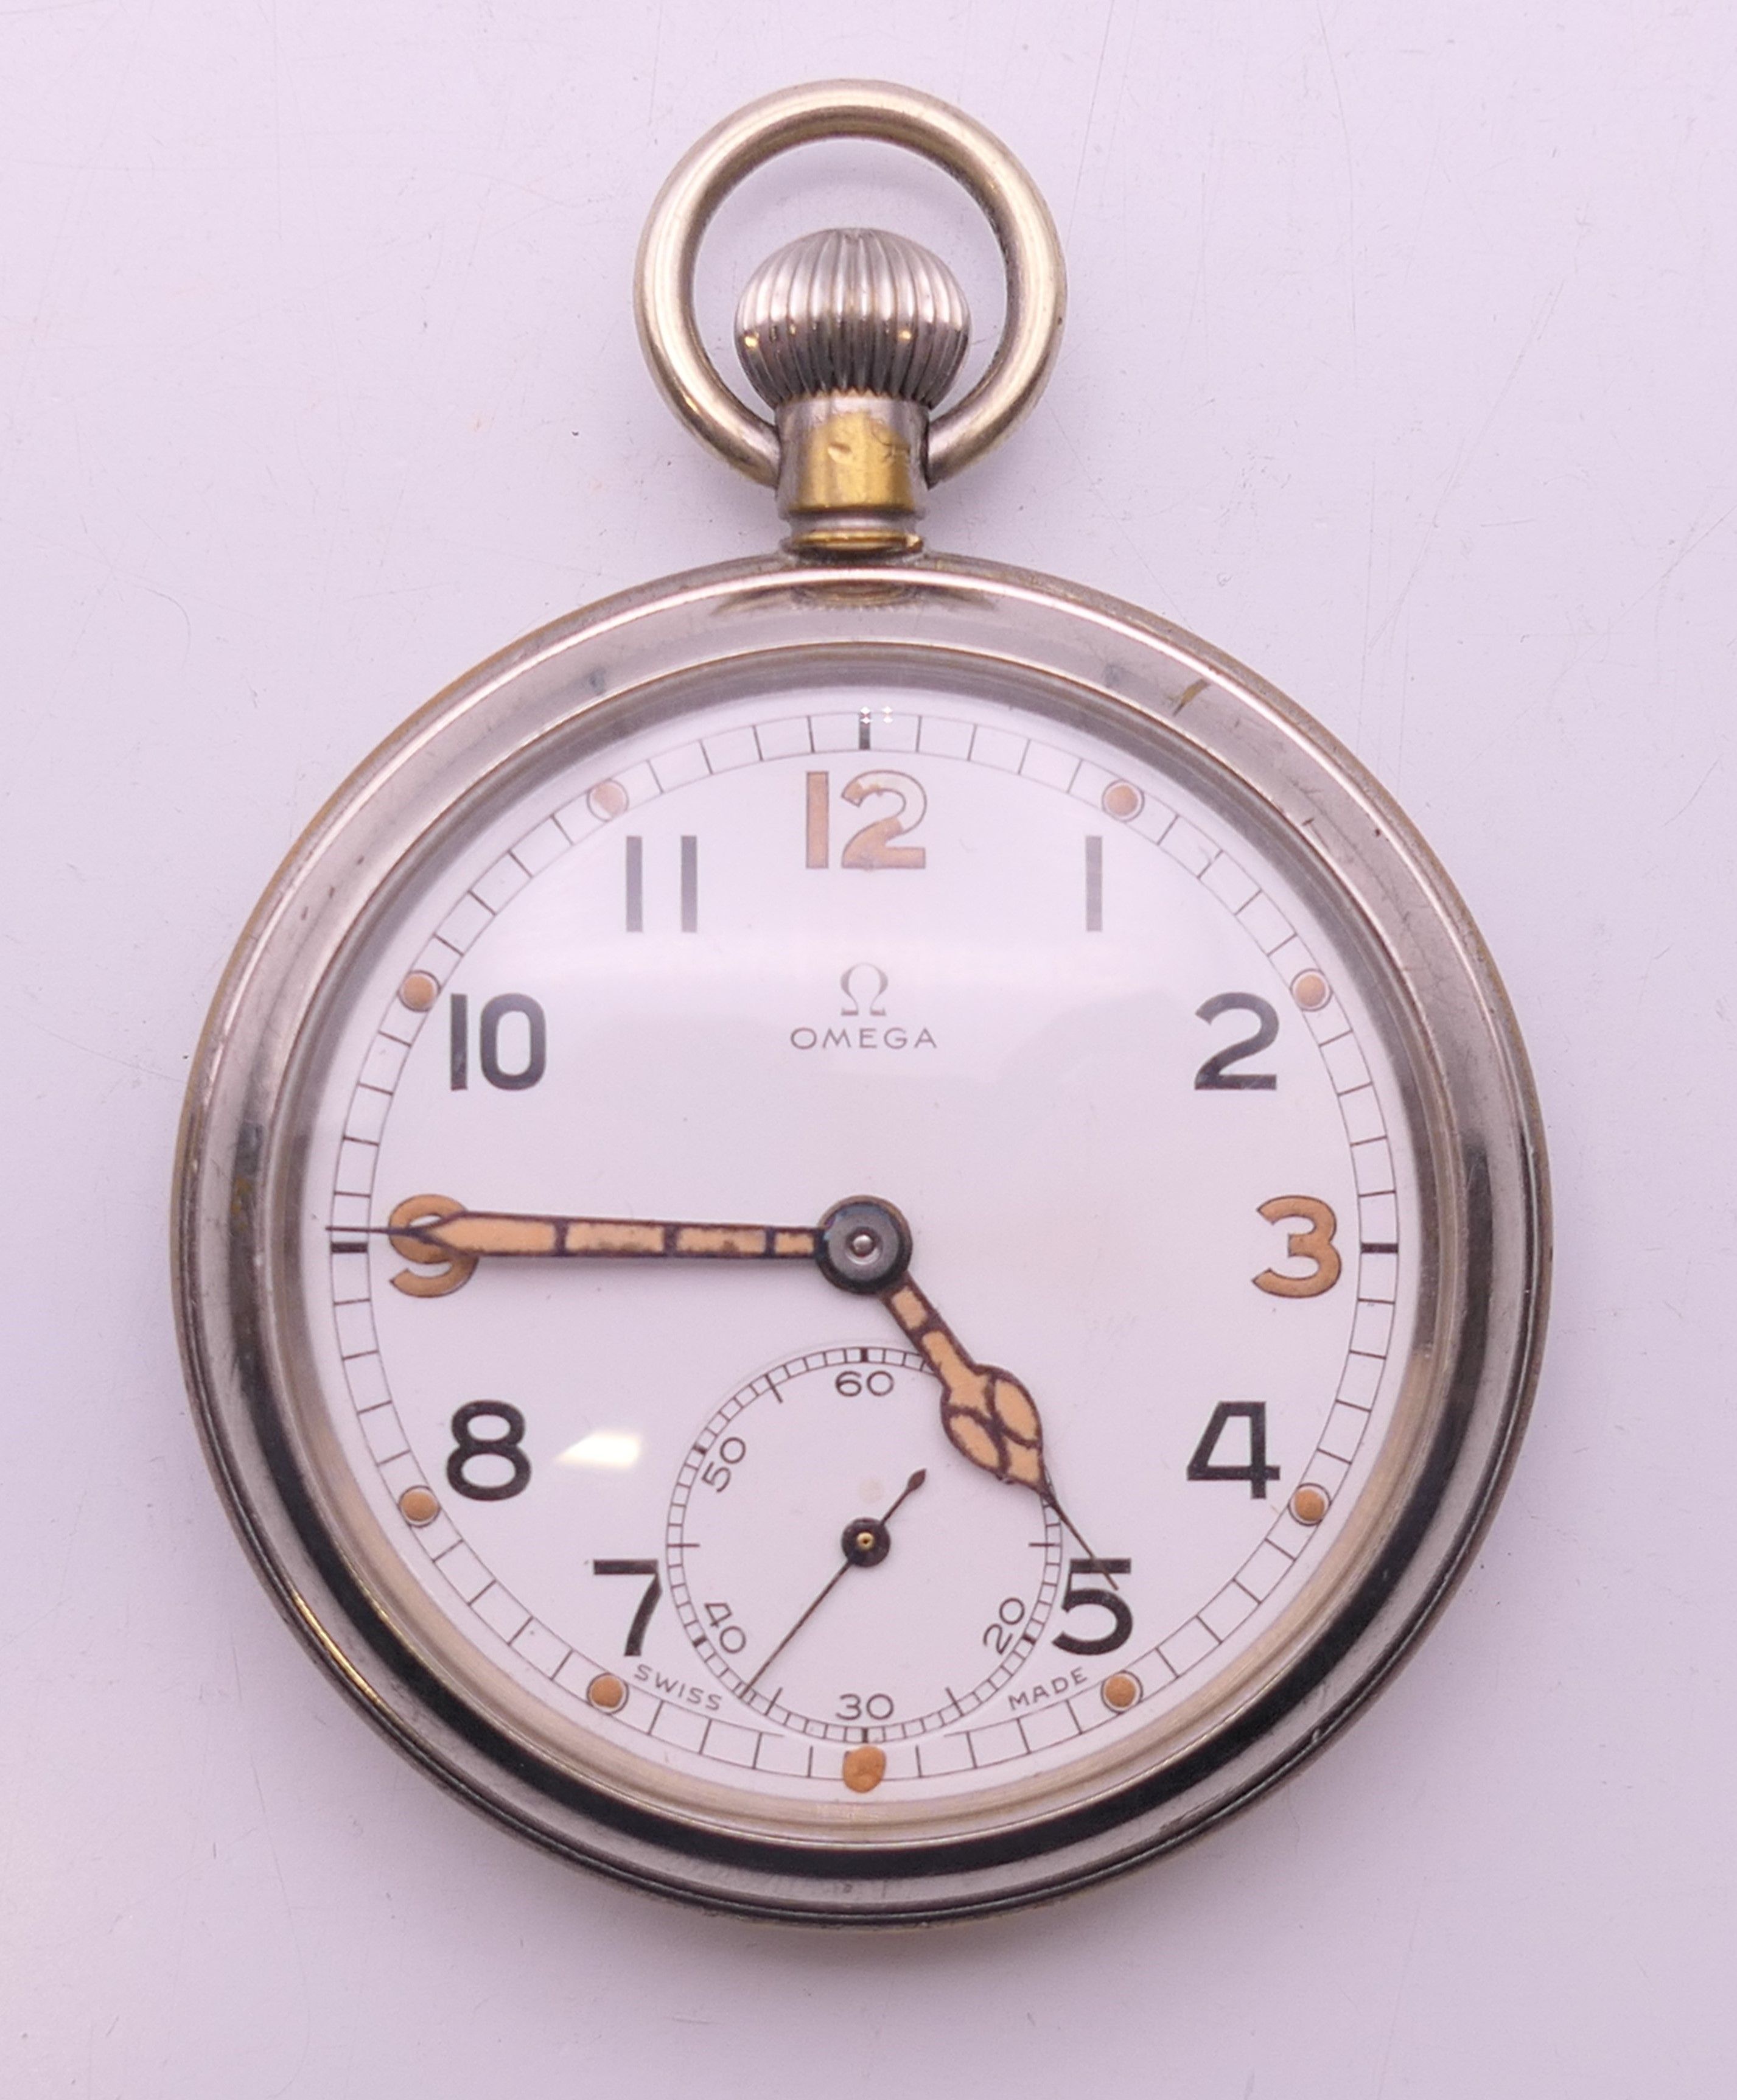 An Omega gentleman's silver-plated pocket watch. 5 cm diameter.